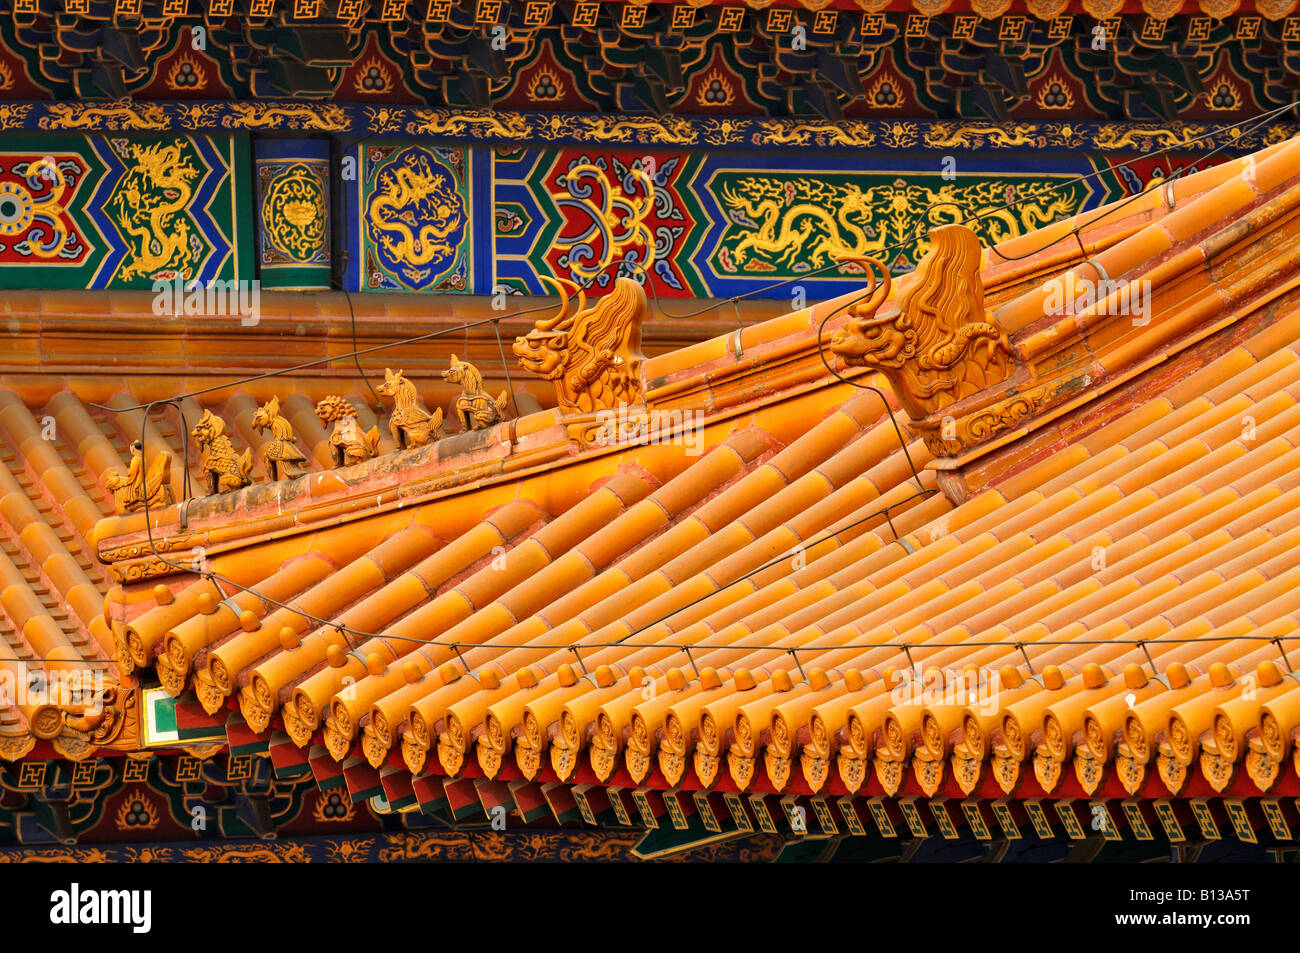 Dächer mit dekorativen Fries elegante Fliesen & schützende Tiere und Gottheiten auf Hall der obersten Harmonie verbotene Stadt China Stockfoto